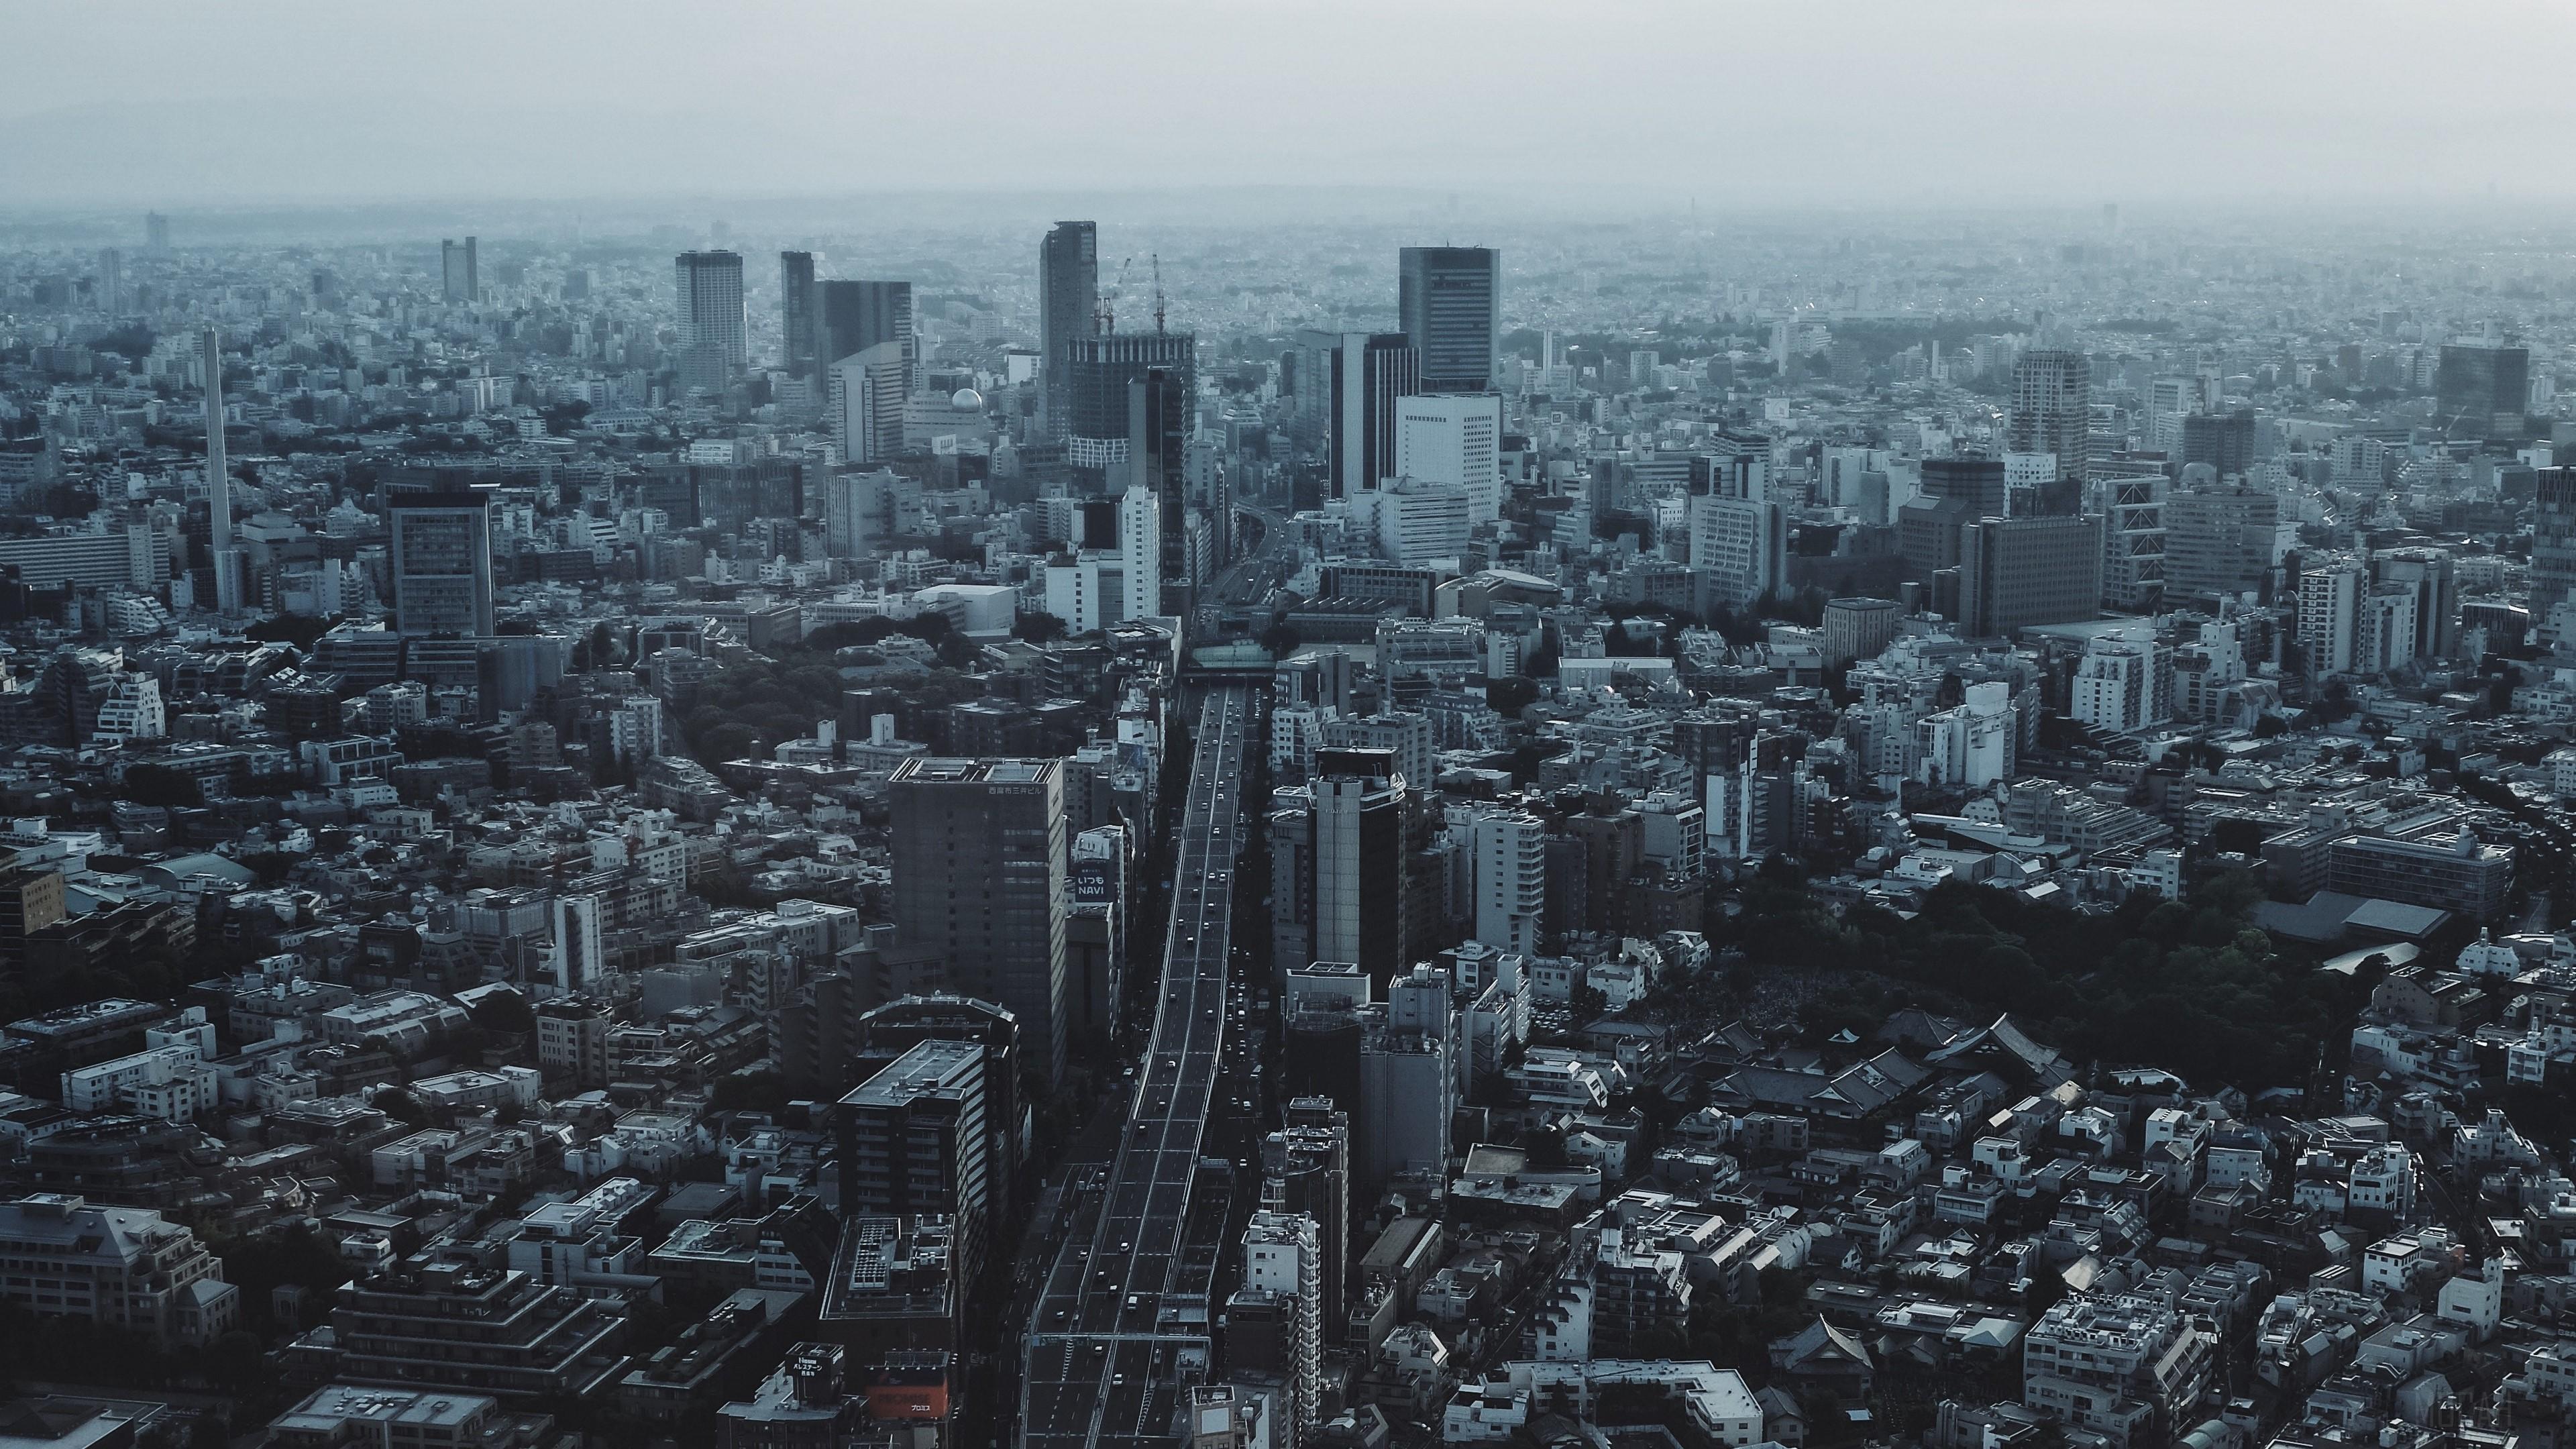 HD wallpaper, Tokyo, City, Buildings, Road, Japan 4K, Top View